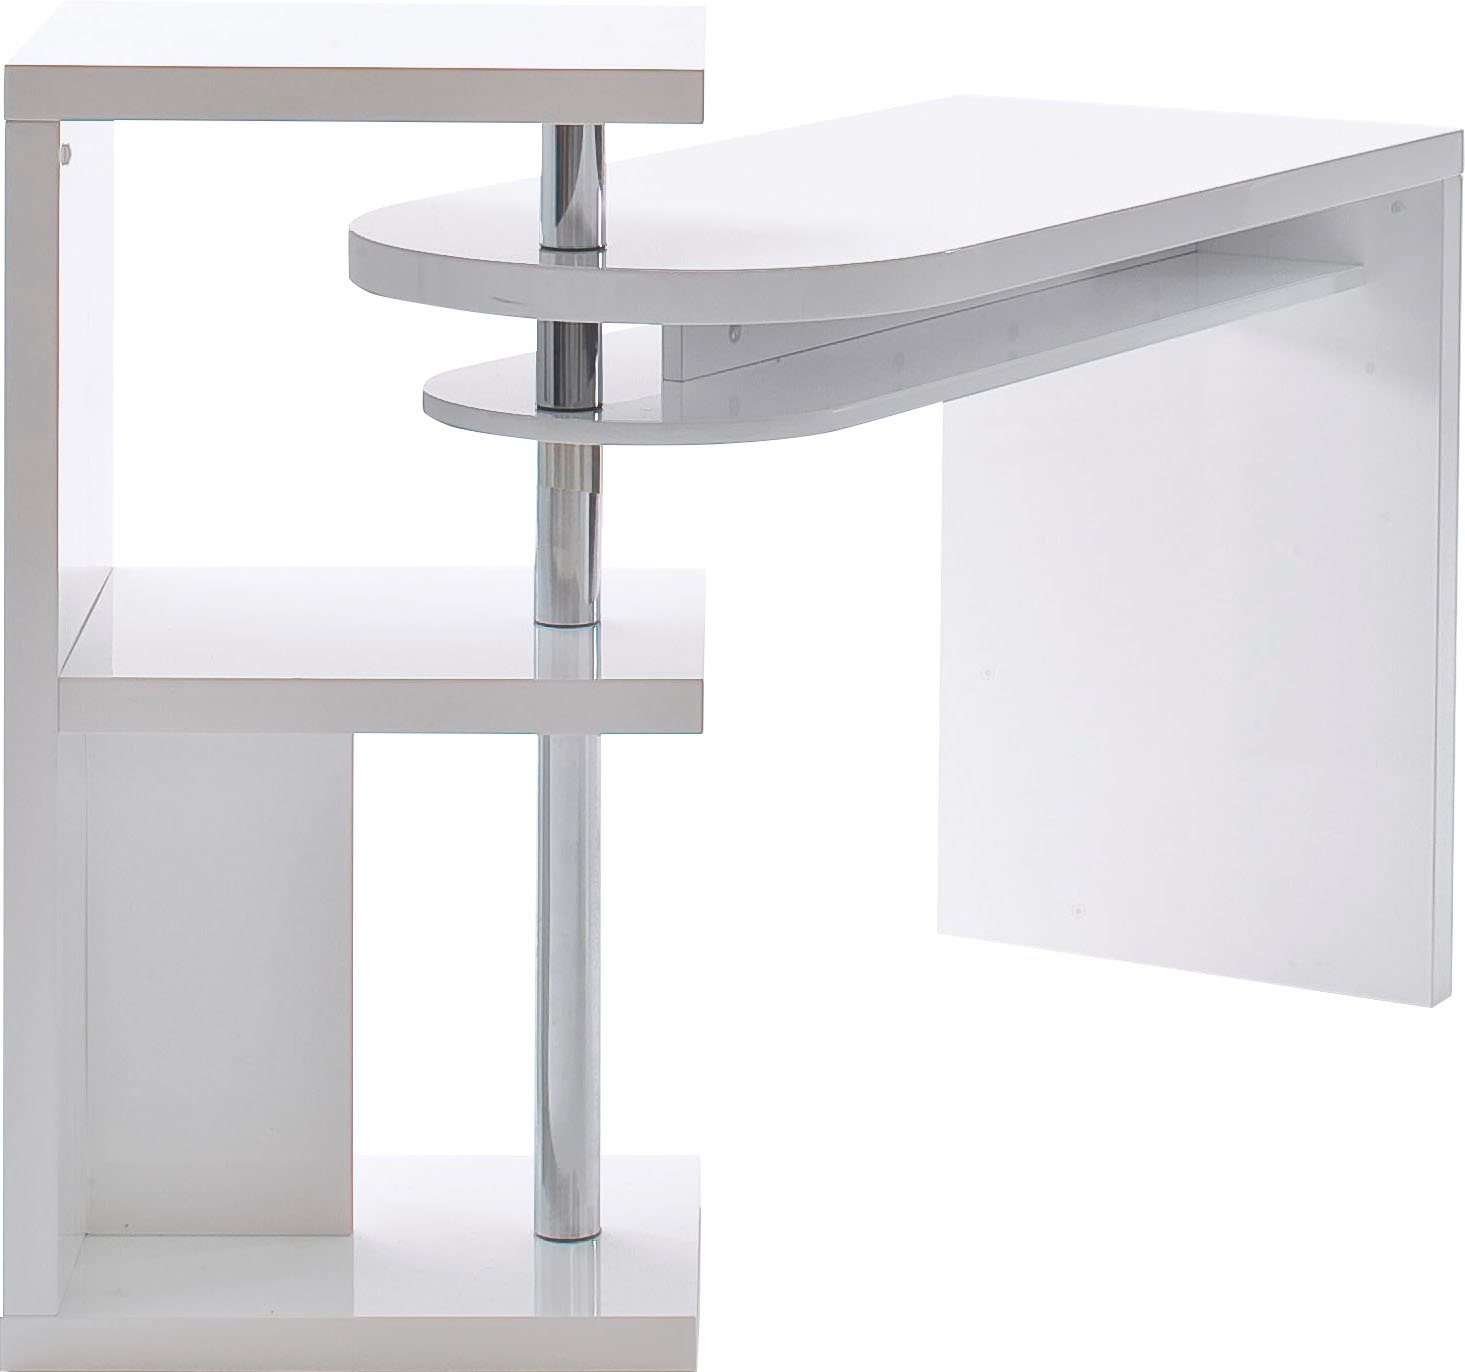 Regalelment furniture MCA schwenkbar Mattis, Schreibtisch hochglanz, weiß Tischplatte mit